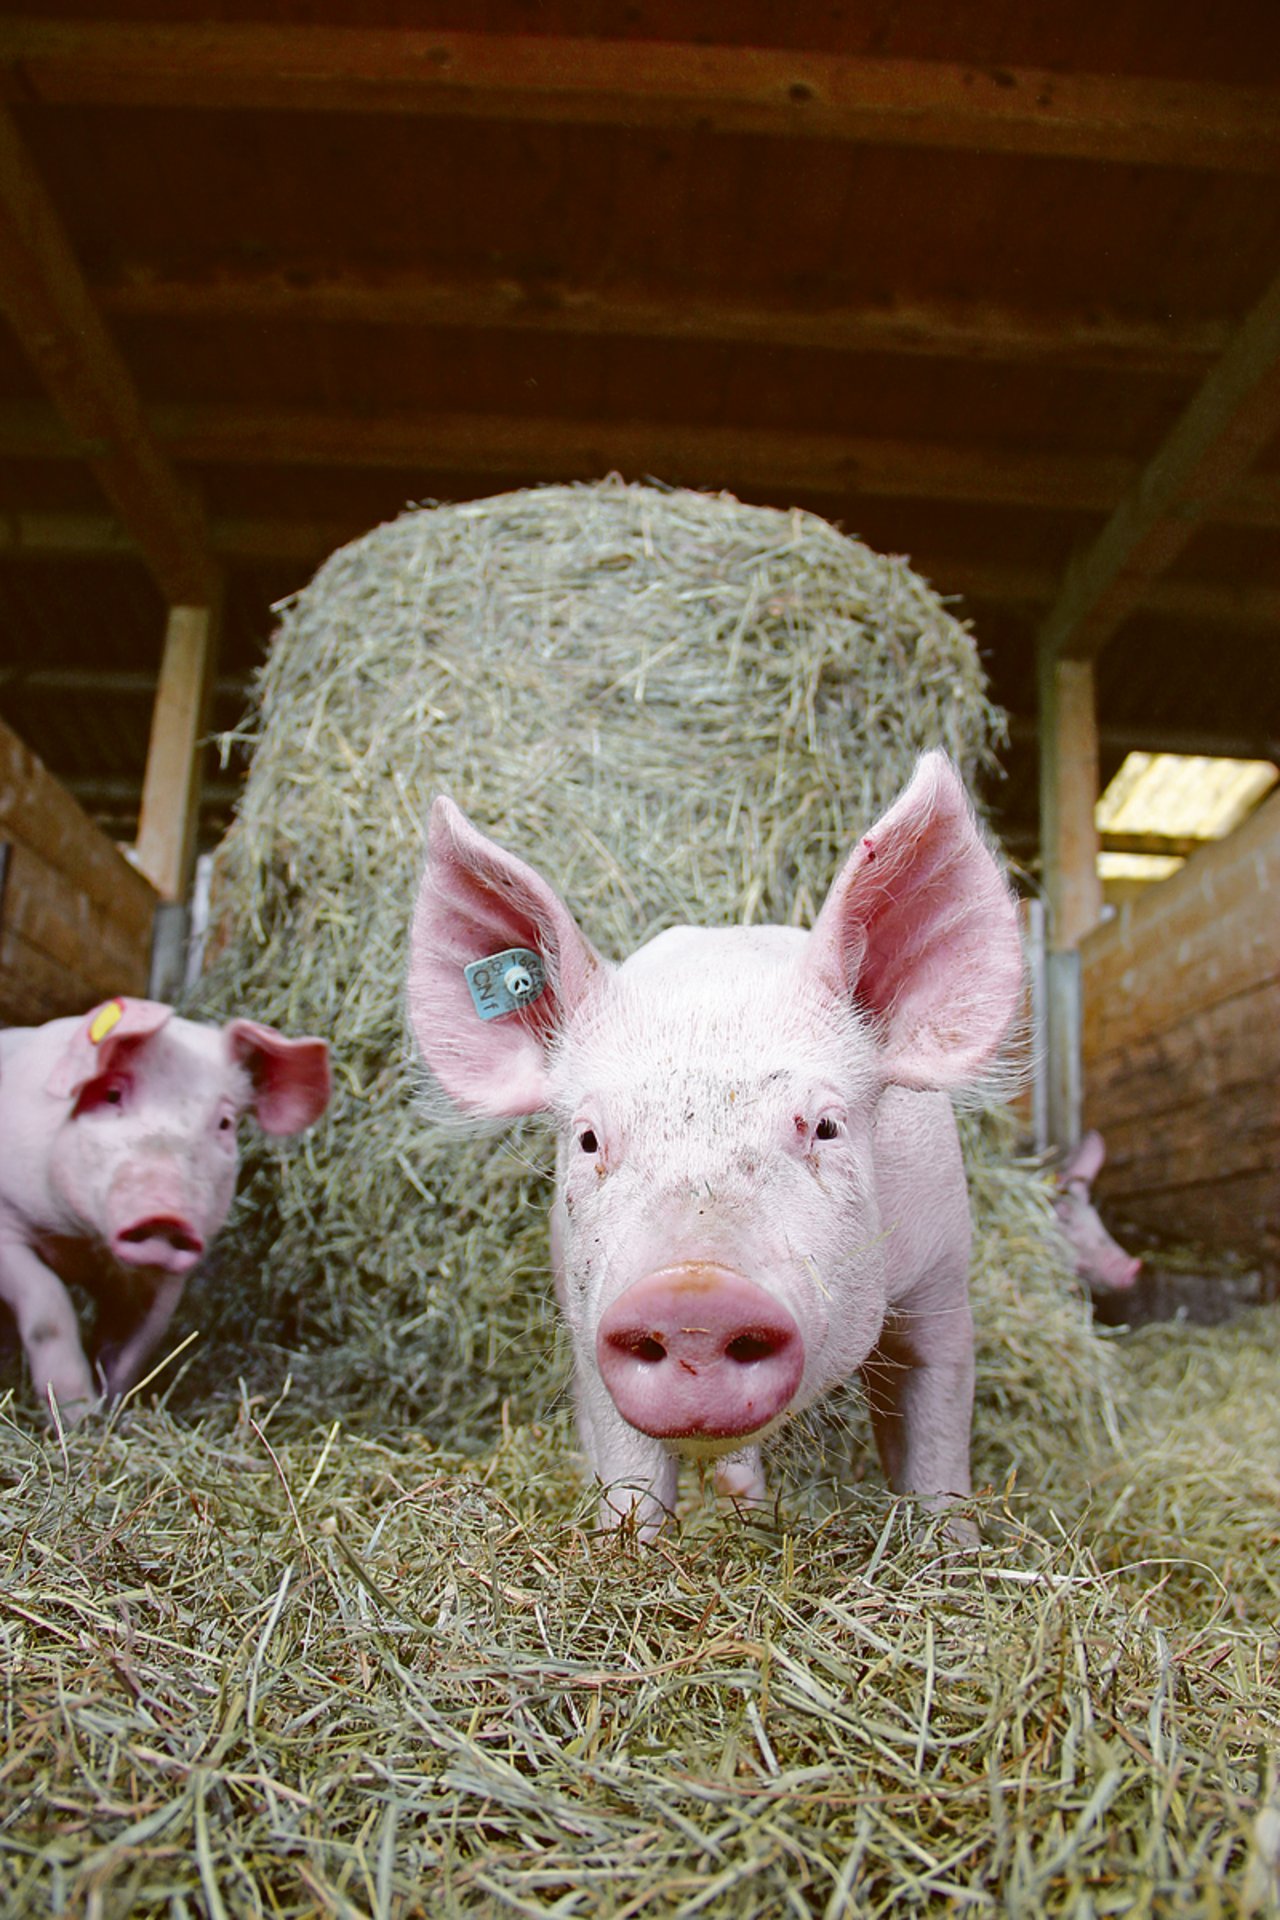 Höhere Anforderungen sorgen für teurere Produktionskosten und einen höheren Preis im Laden – wie bei diesen CNf-Schweinen. Weil der Absatz stockt, haben die Bauern nichts davon. (Bild sha)